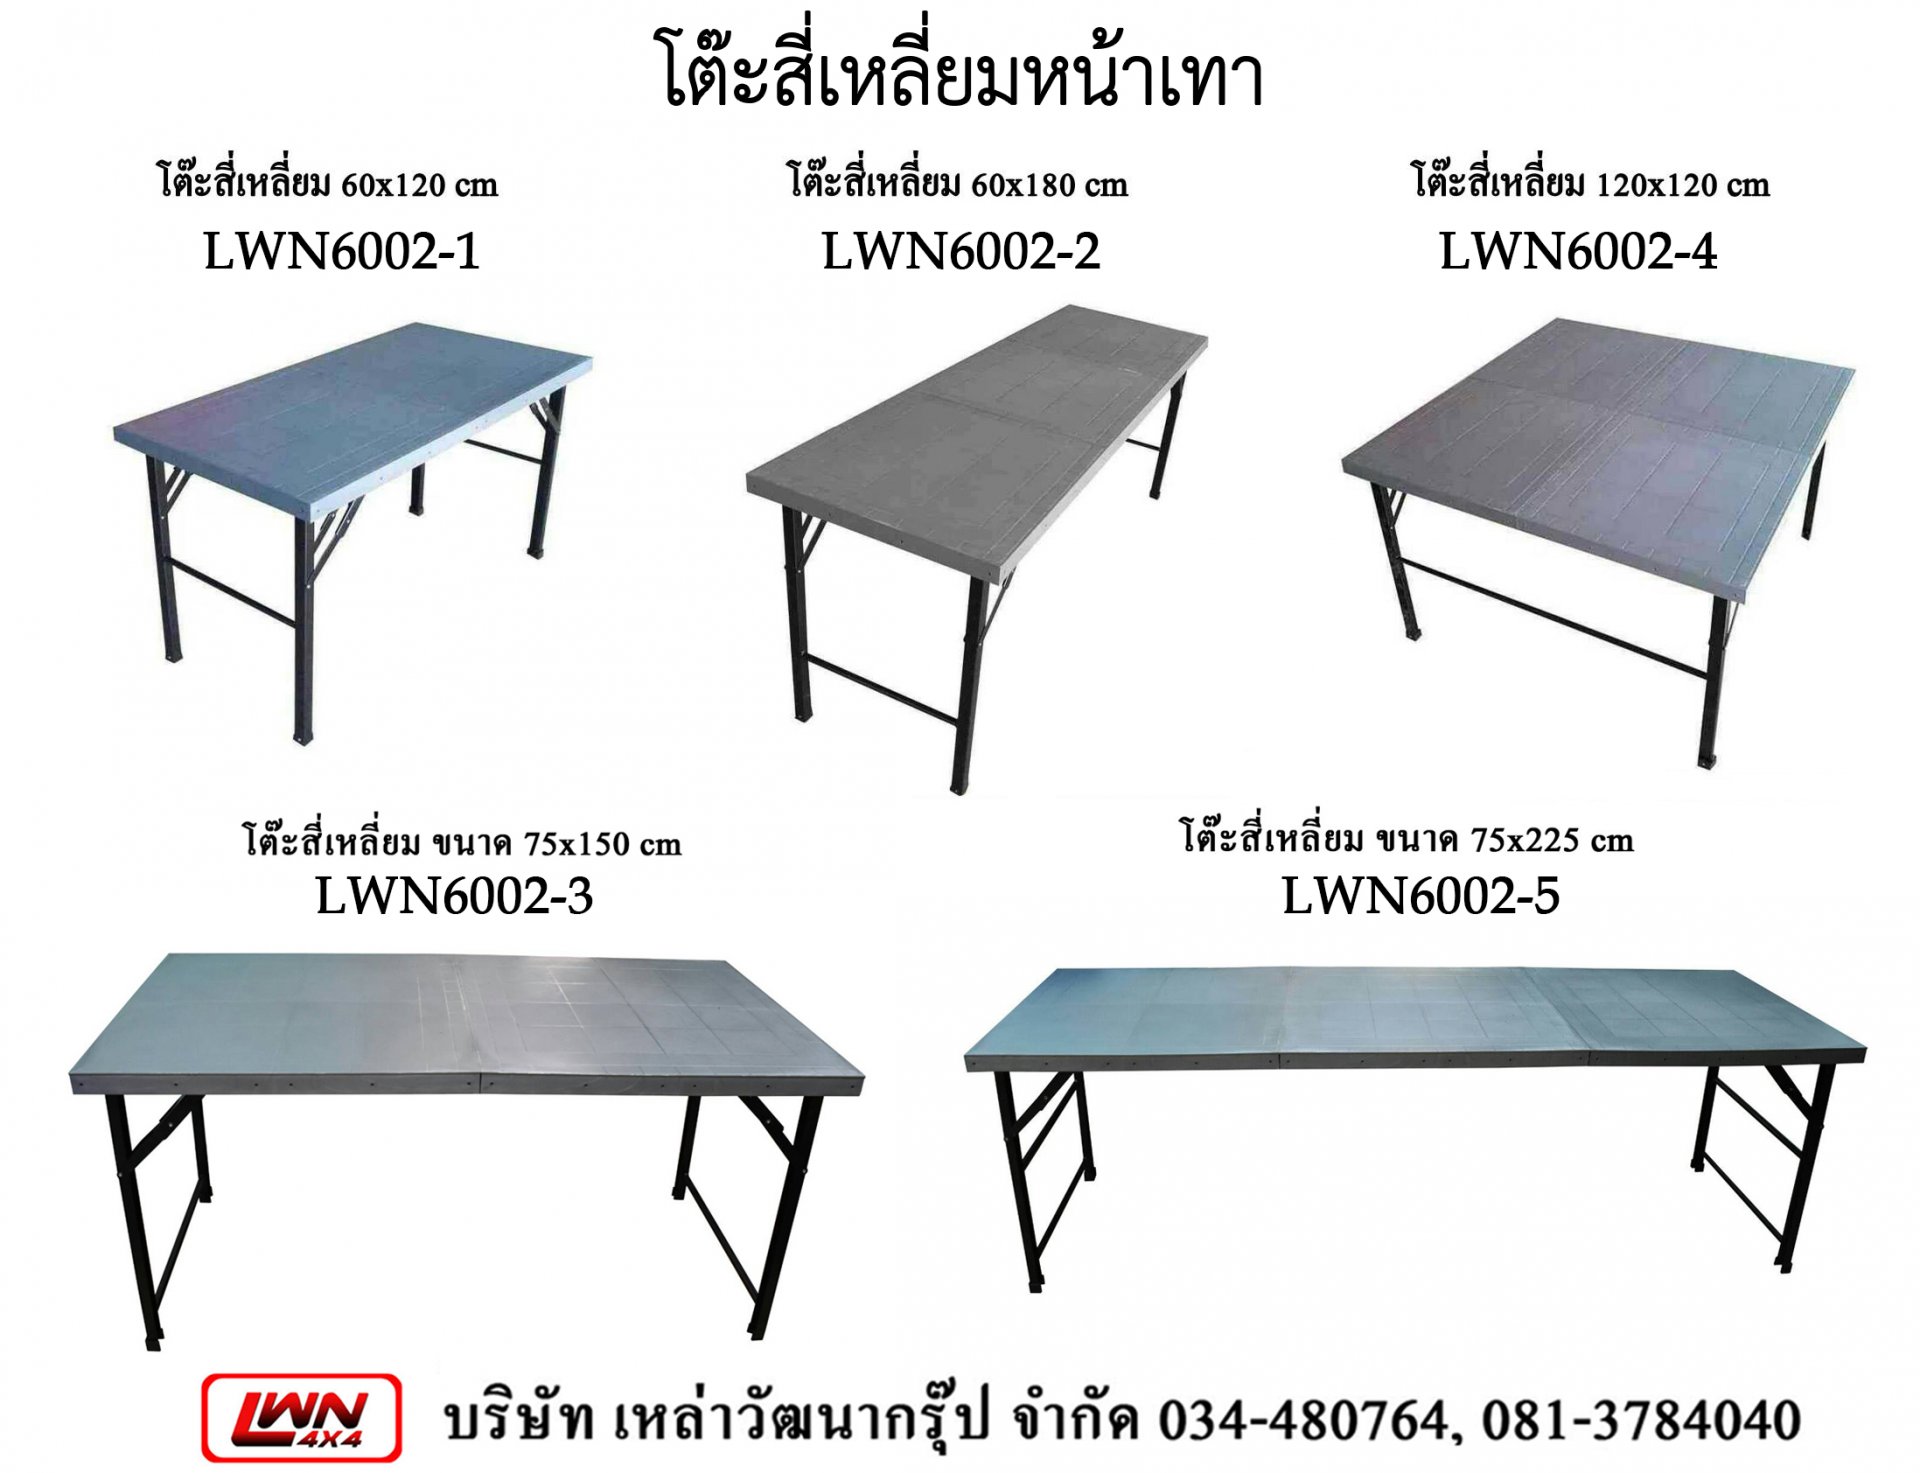 Plastic Square Table #LWN60021